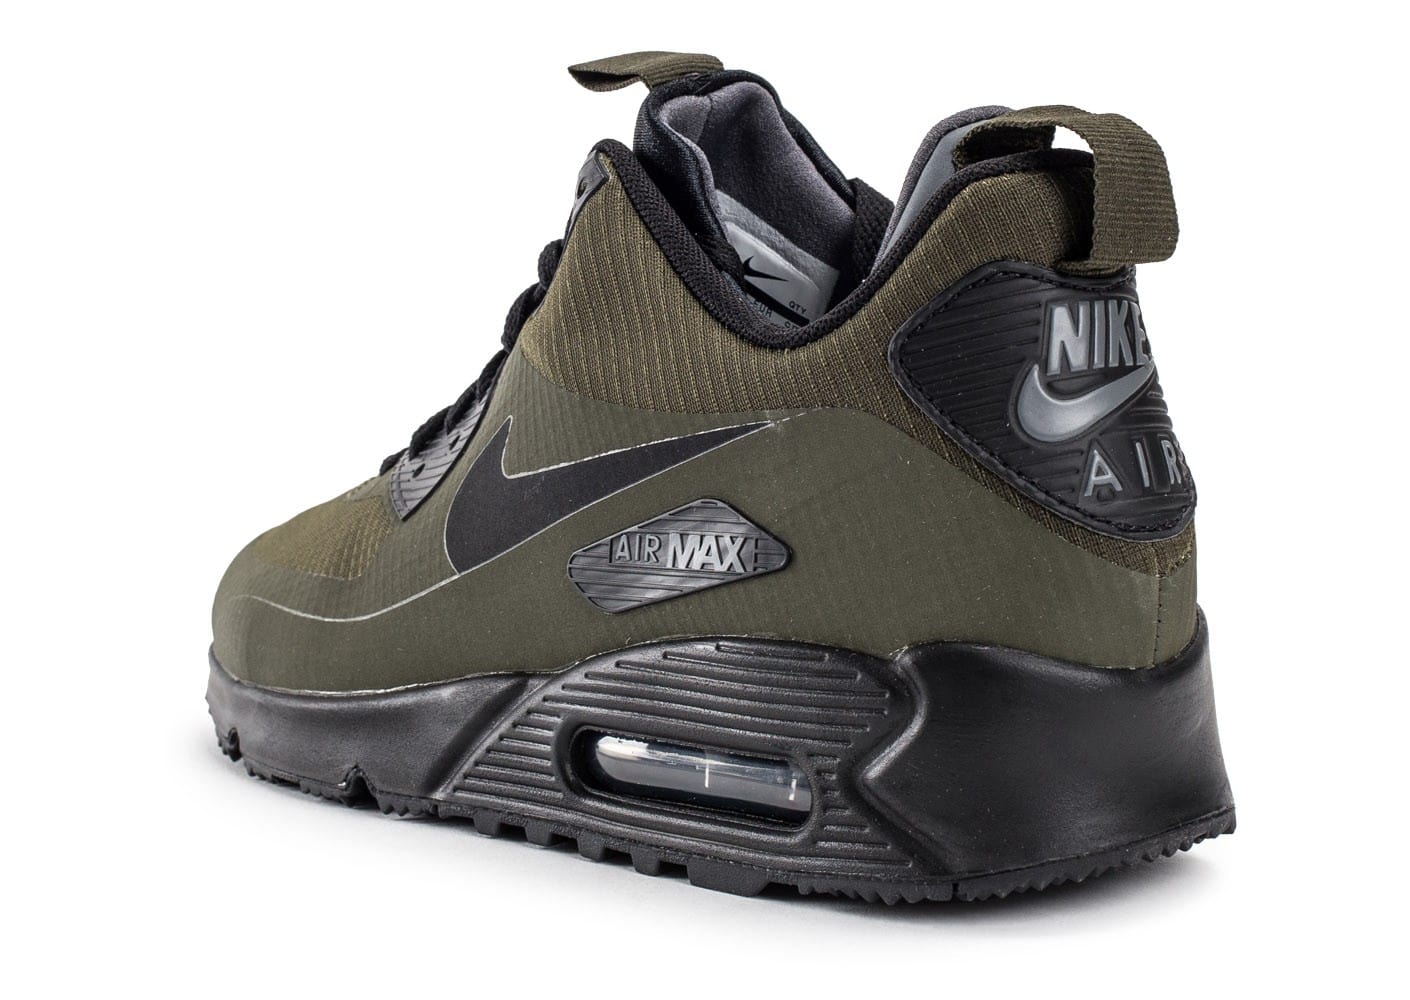 nike air max 90 mid winter khaki, ... Chaussures Nike Air Max 90 Mid Winter Green vue arrière ...